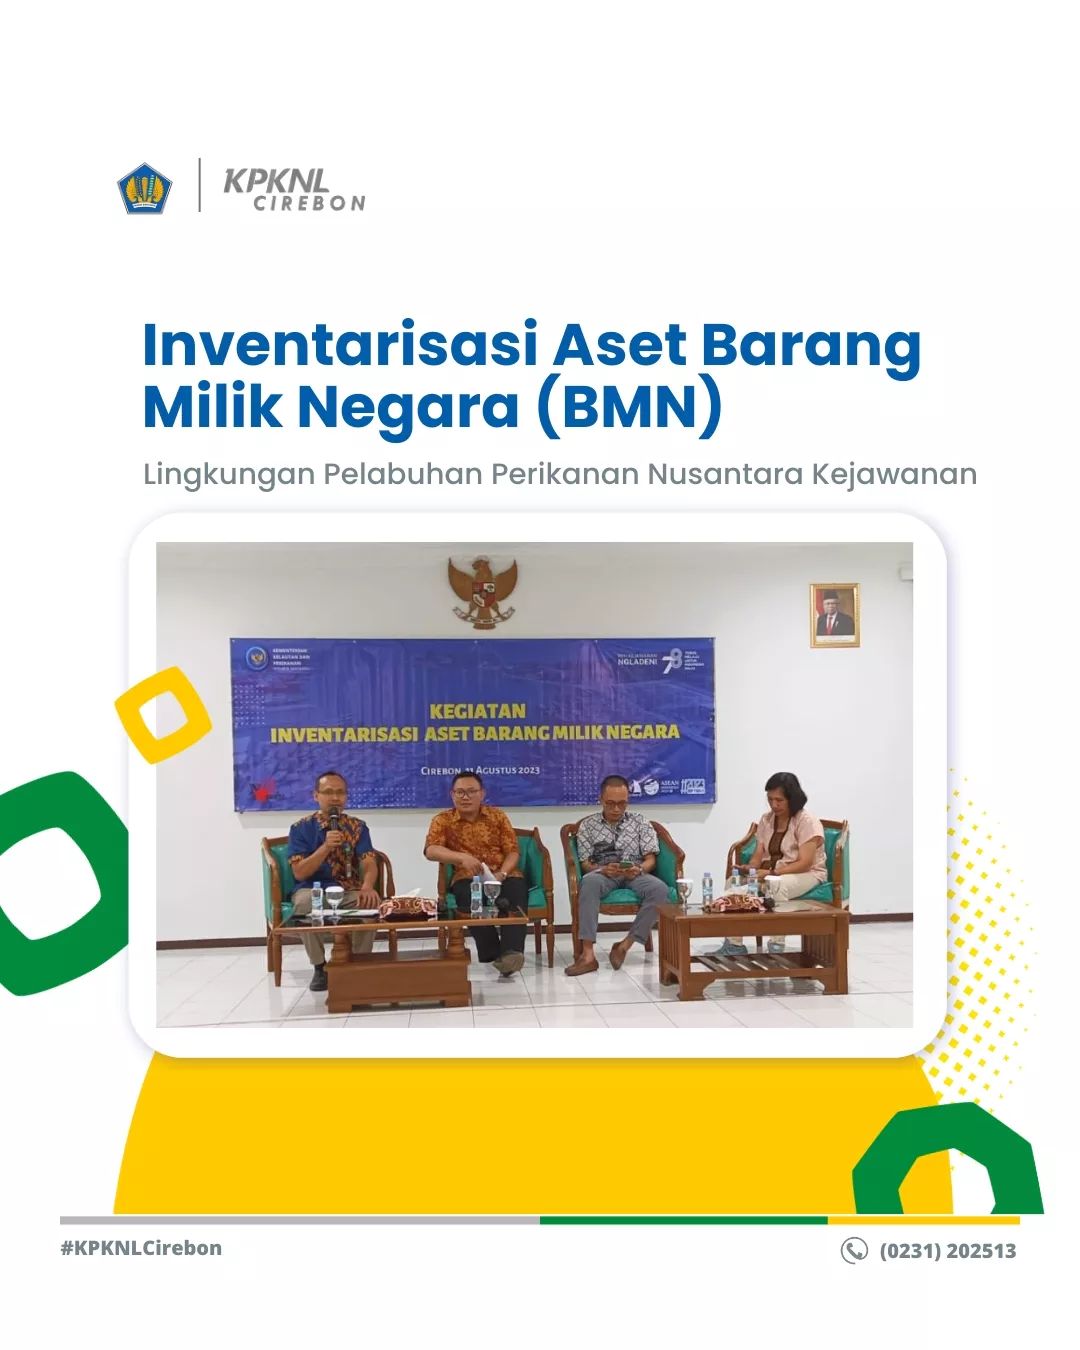 Inventarisasi Aset Barang Milik Negara (BMN) Lingkungan Pelabuhan Perikanan Nusantara Kejawanan